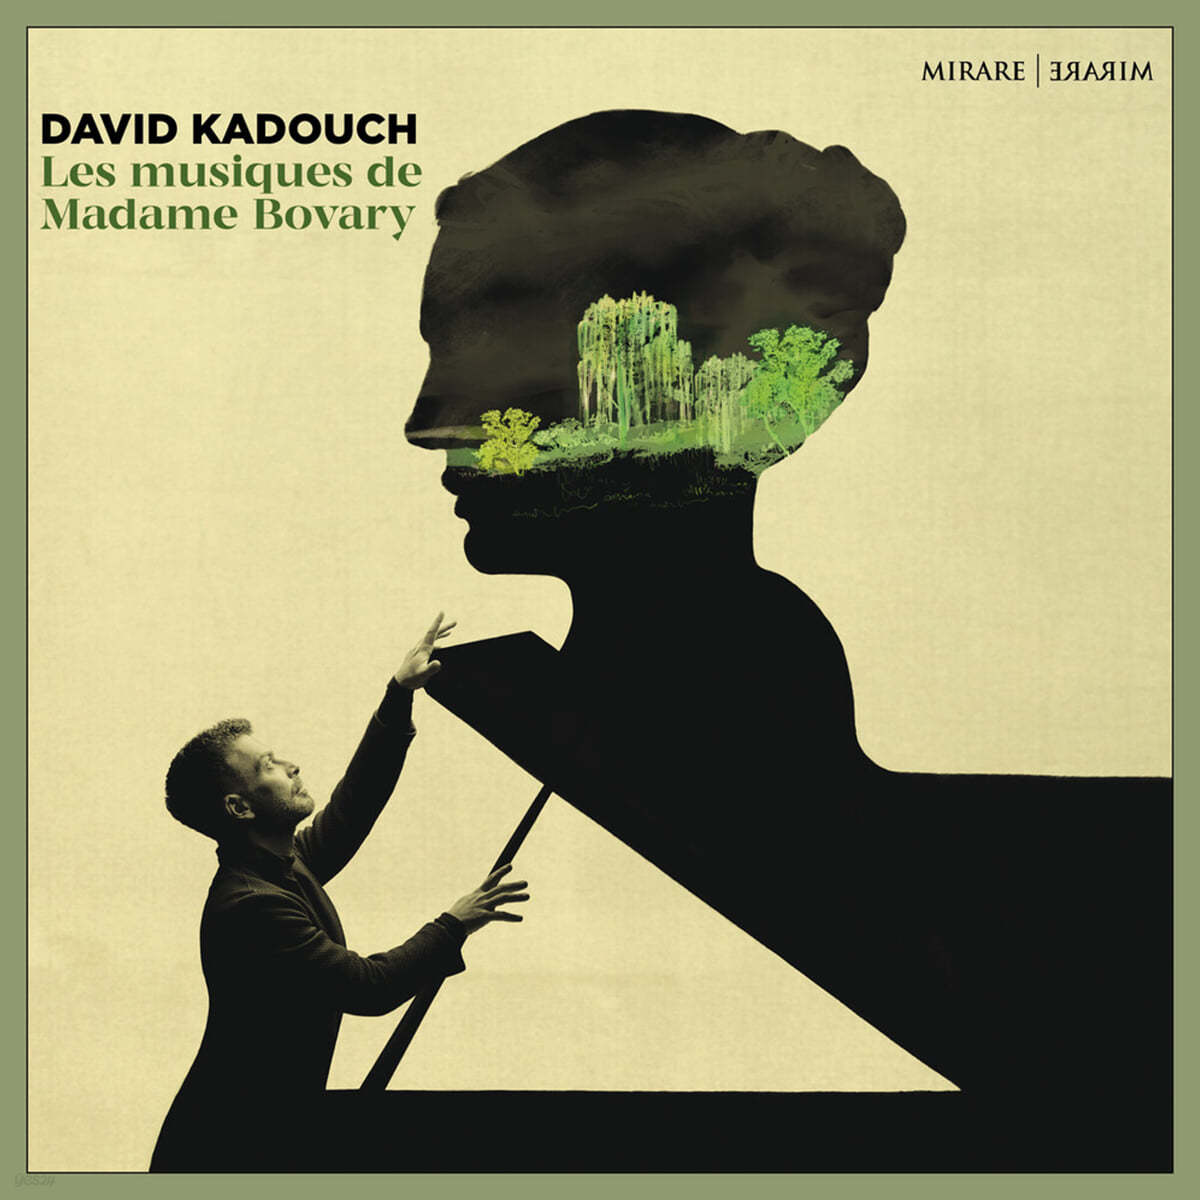 David Kadouch `마담 보바리` 소설을 주제로 한 음악 (Les Musiques De Madame Bovary)